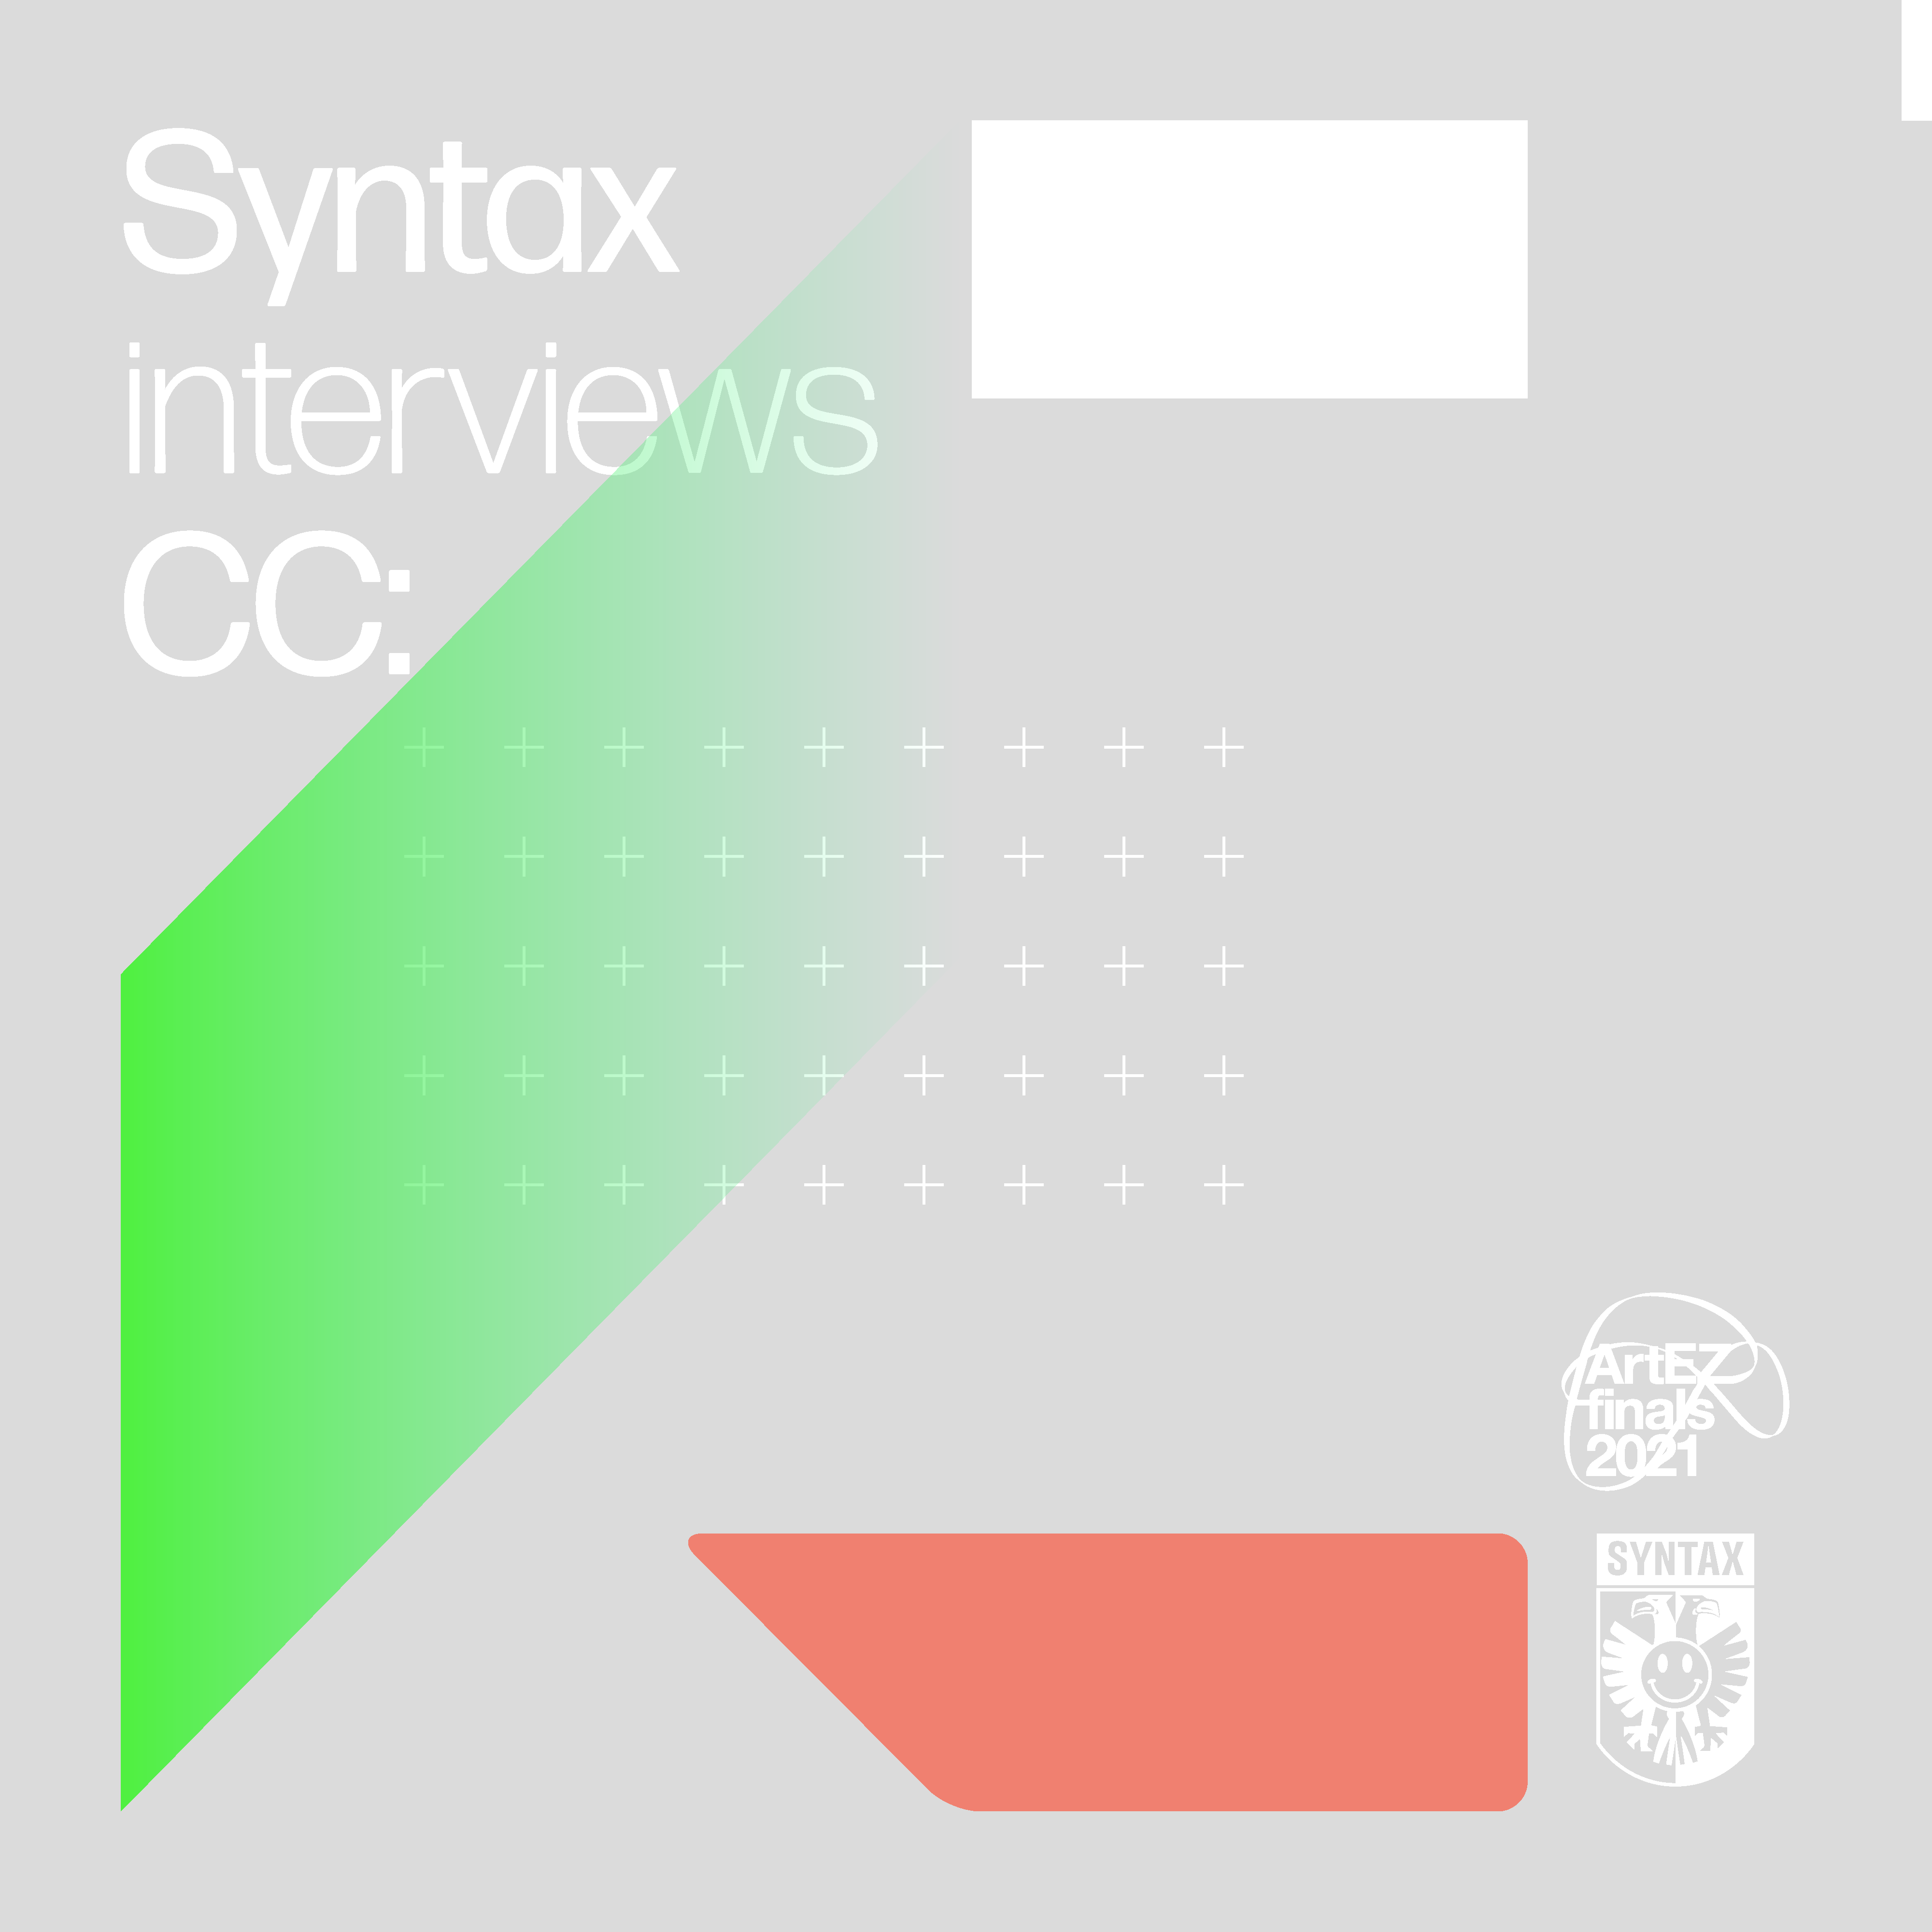 Syntax interviews CC: